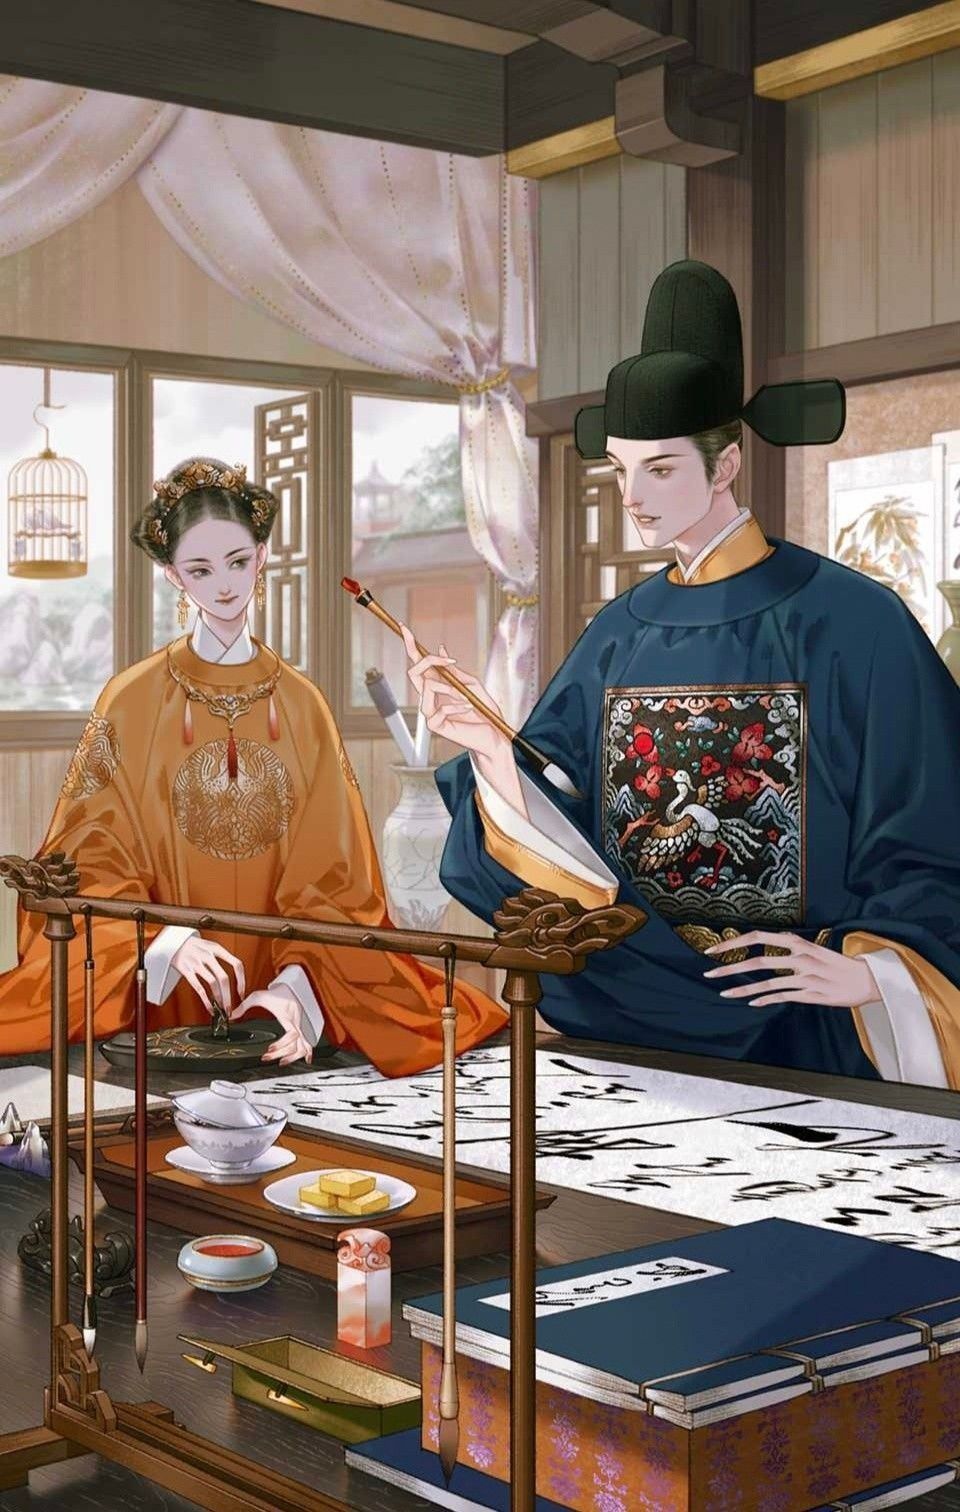  
Phụng Dương công chúa và Chiêu Minh Đại Vương - Trần Quang Khải được sử sách đánh giá là cặp phu thê trai tài gái sắc trong chốn hoàng tộc nhà Trần. (Ảnh minh họa: Pinterest)